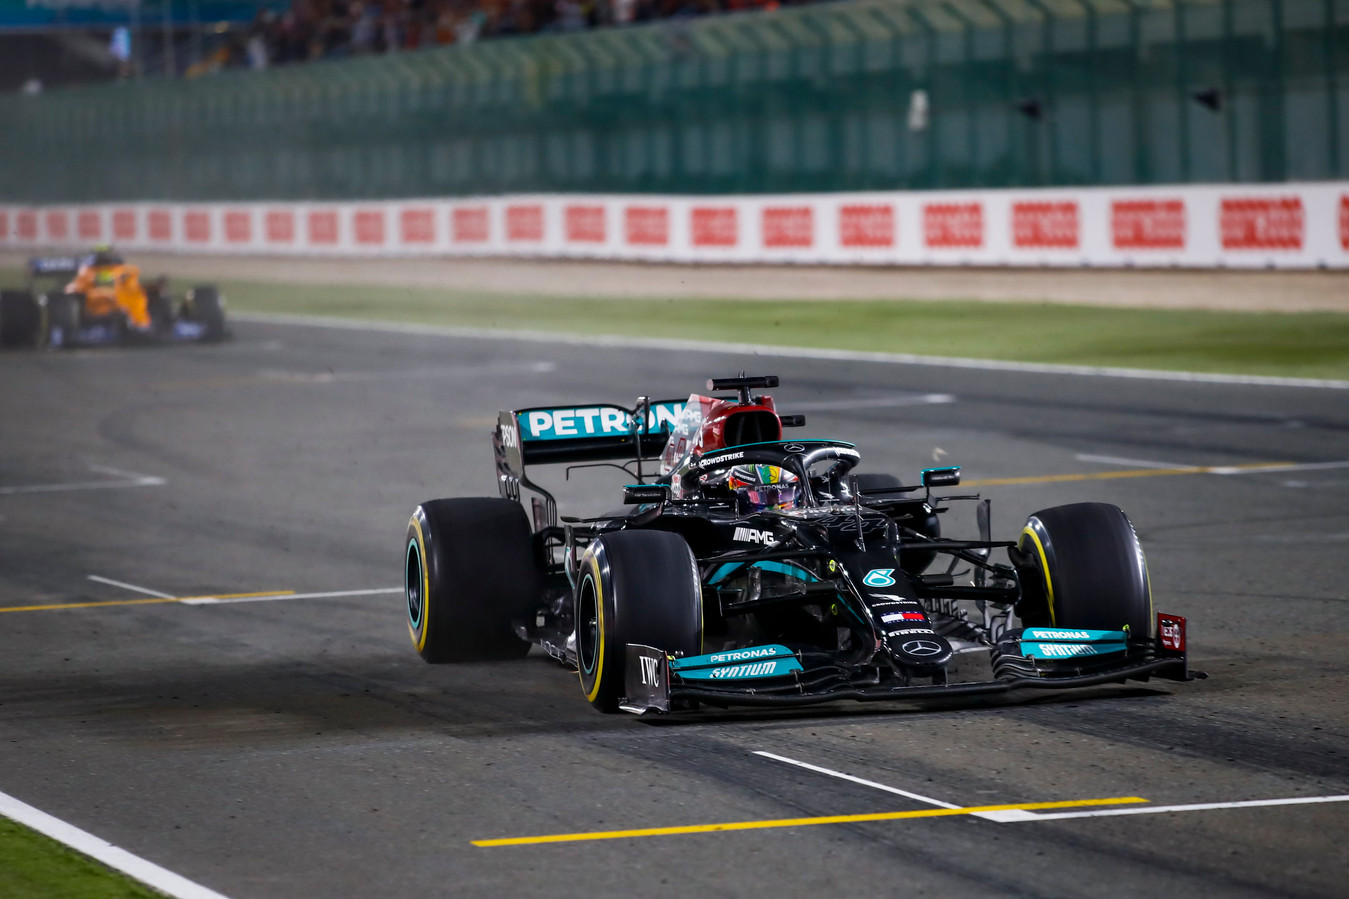 Vainqueur au Brésil et au Qatar, Lewis Hamilton aborde en confiance le GP d'Arabie Saoudite.